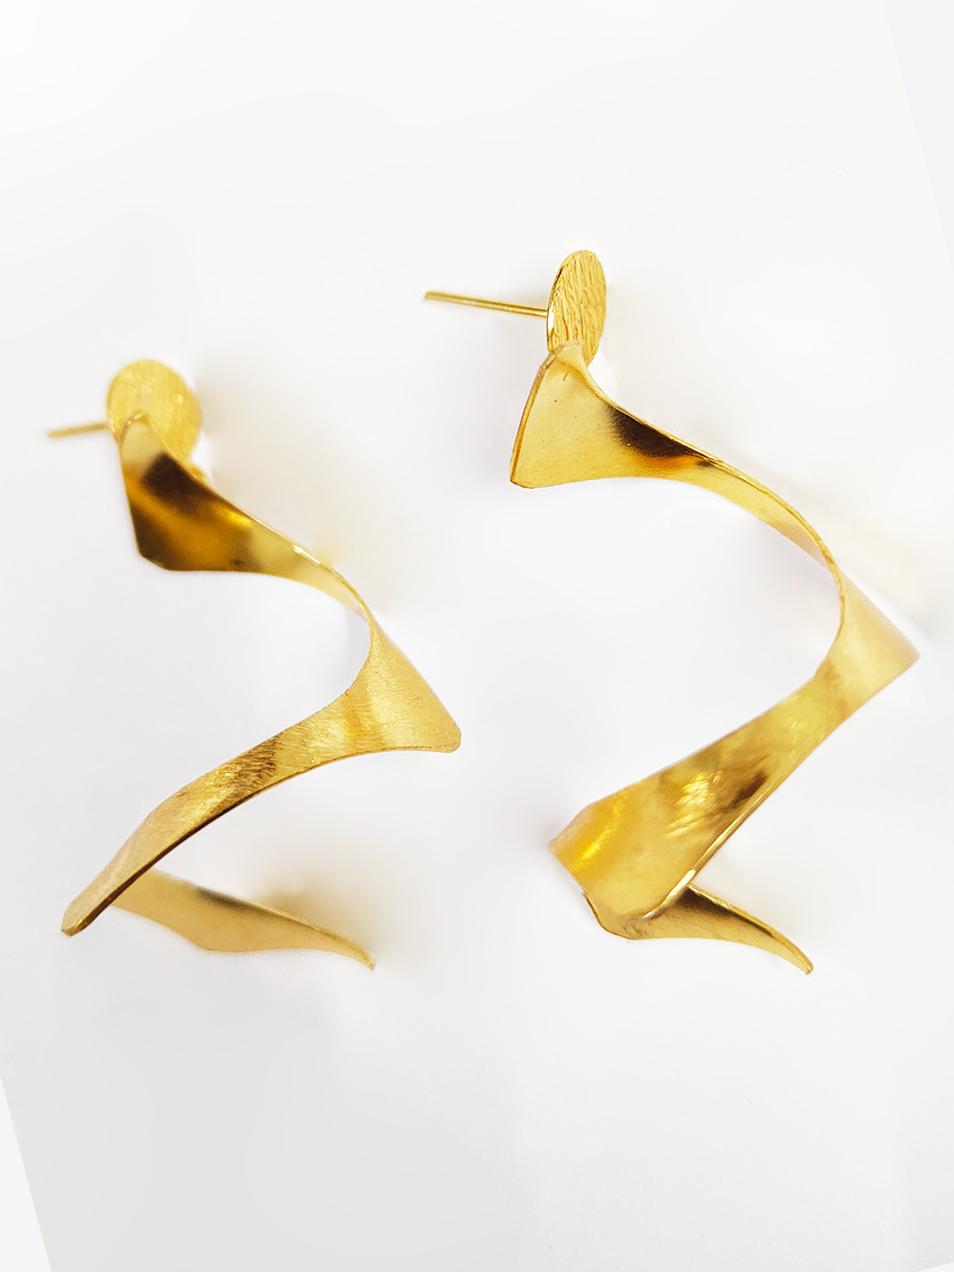 Goldie Locks’ Earrings